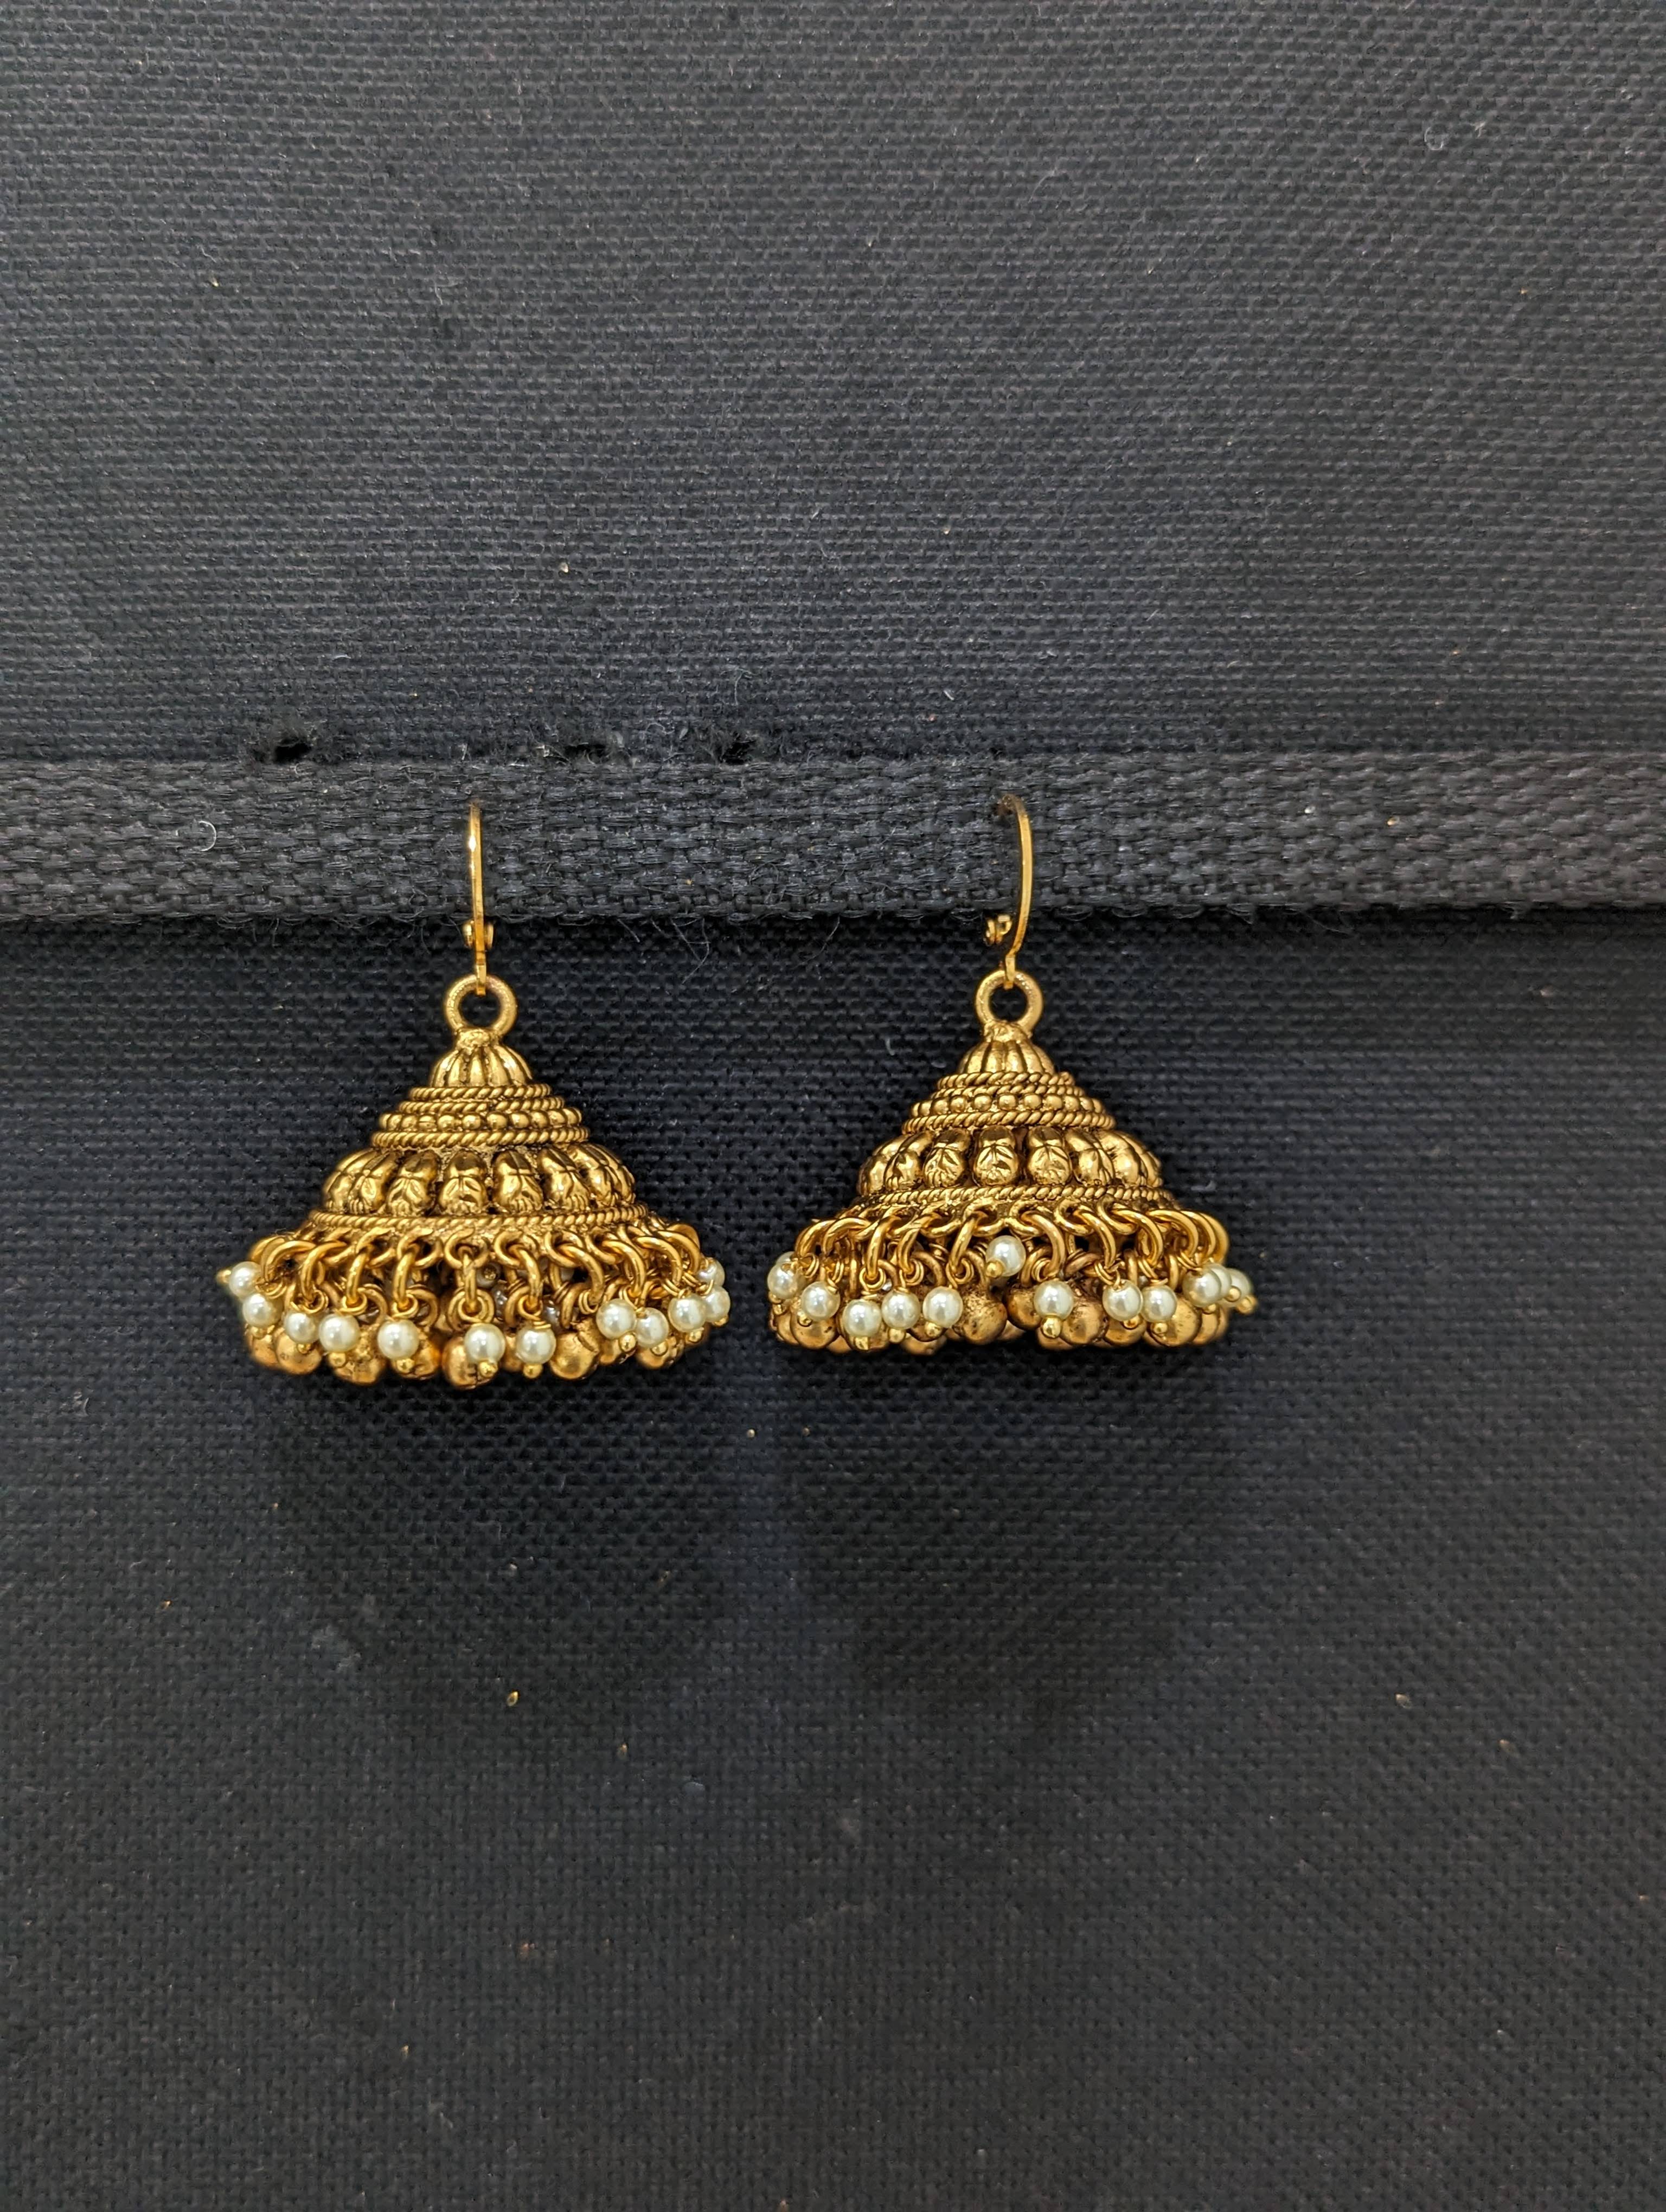 Mahavir Forming Gold Plated Jhumki Earrings - KIK 235 Jumkhi